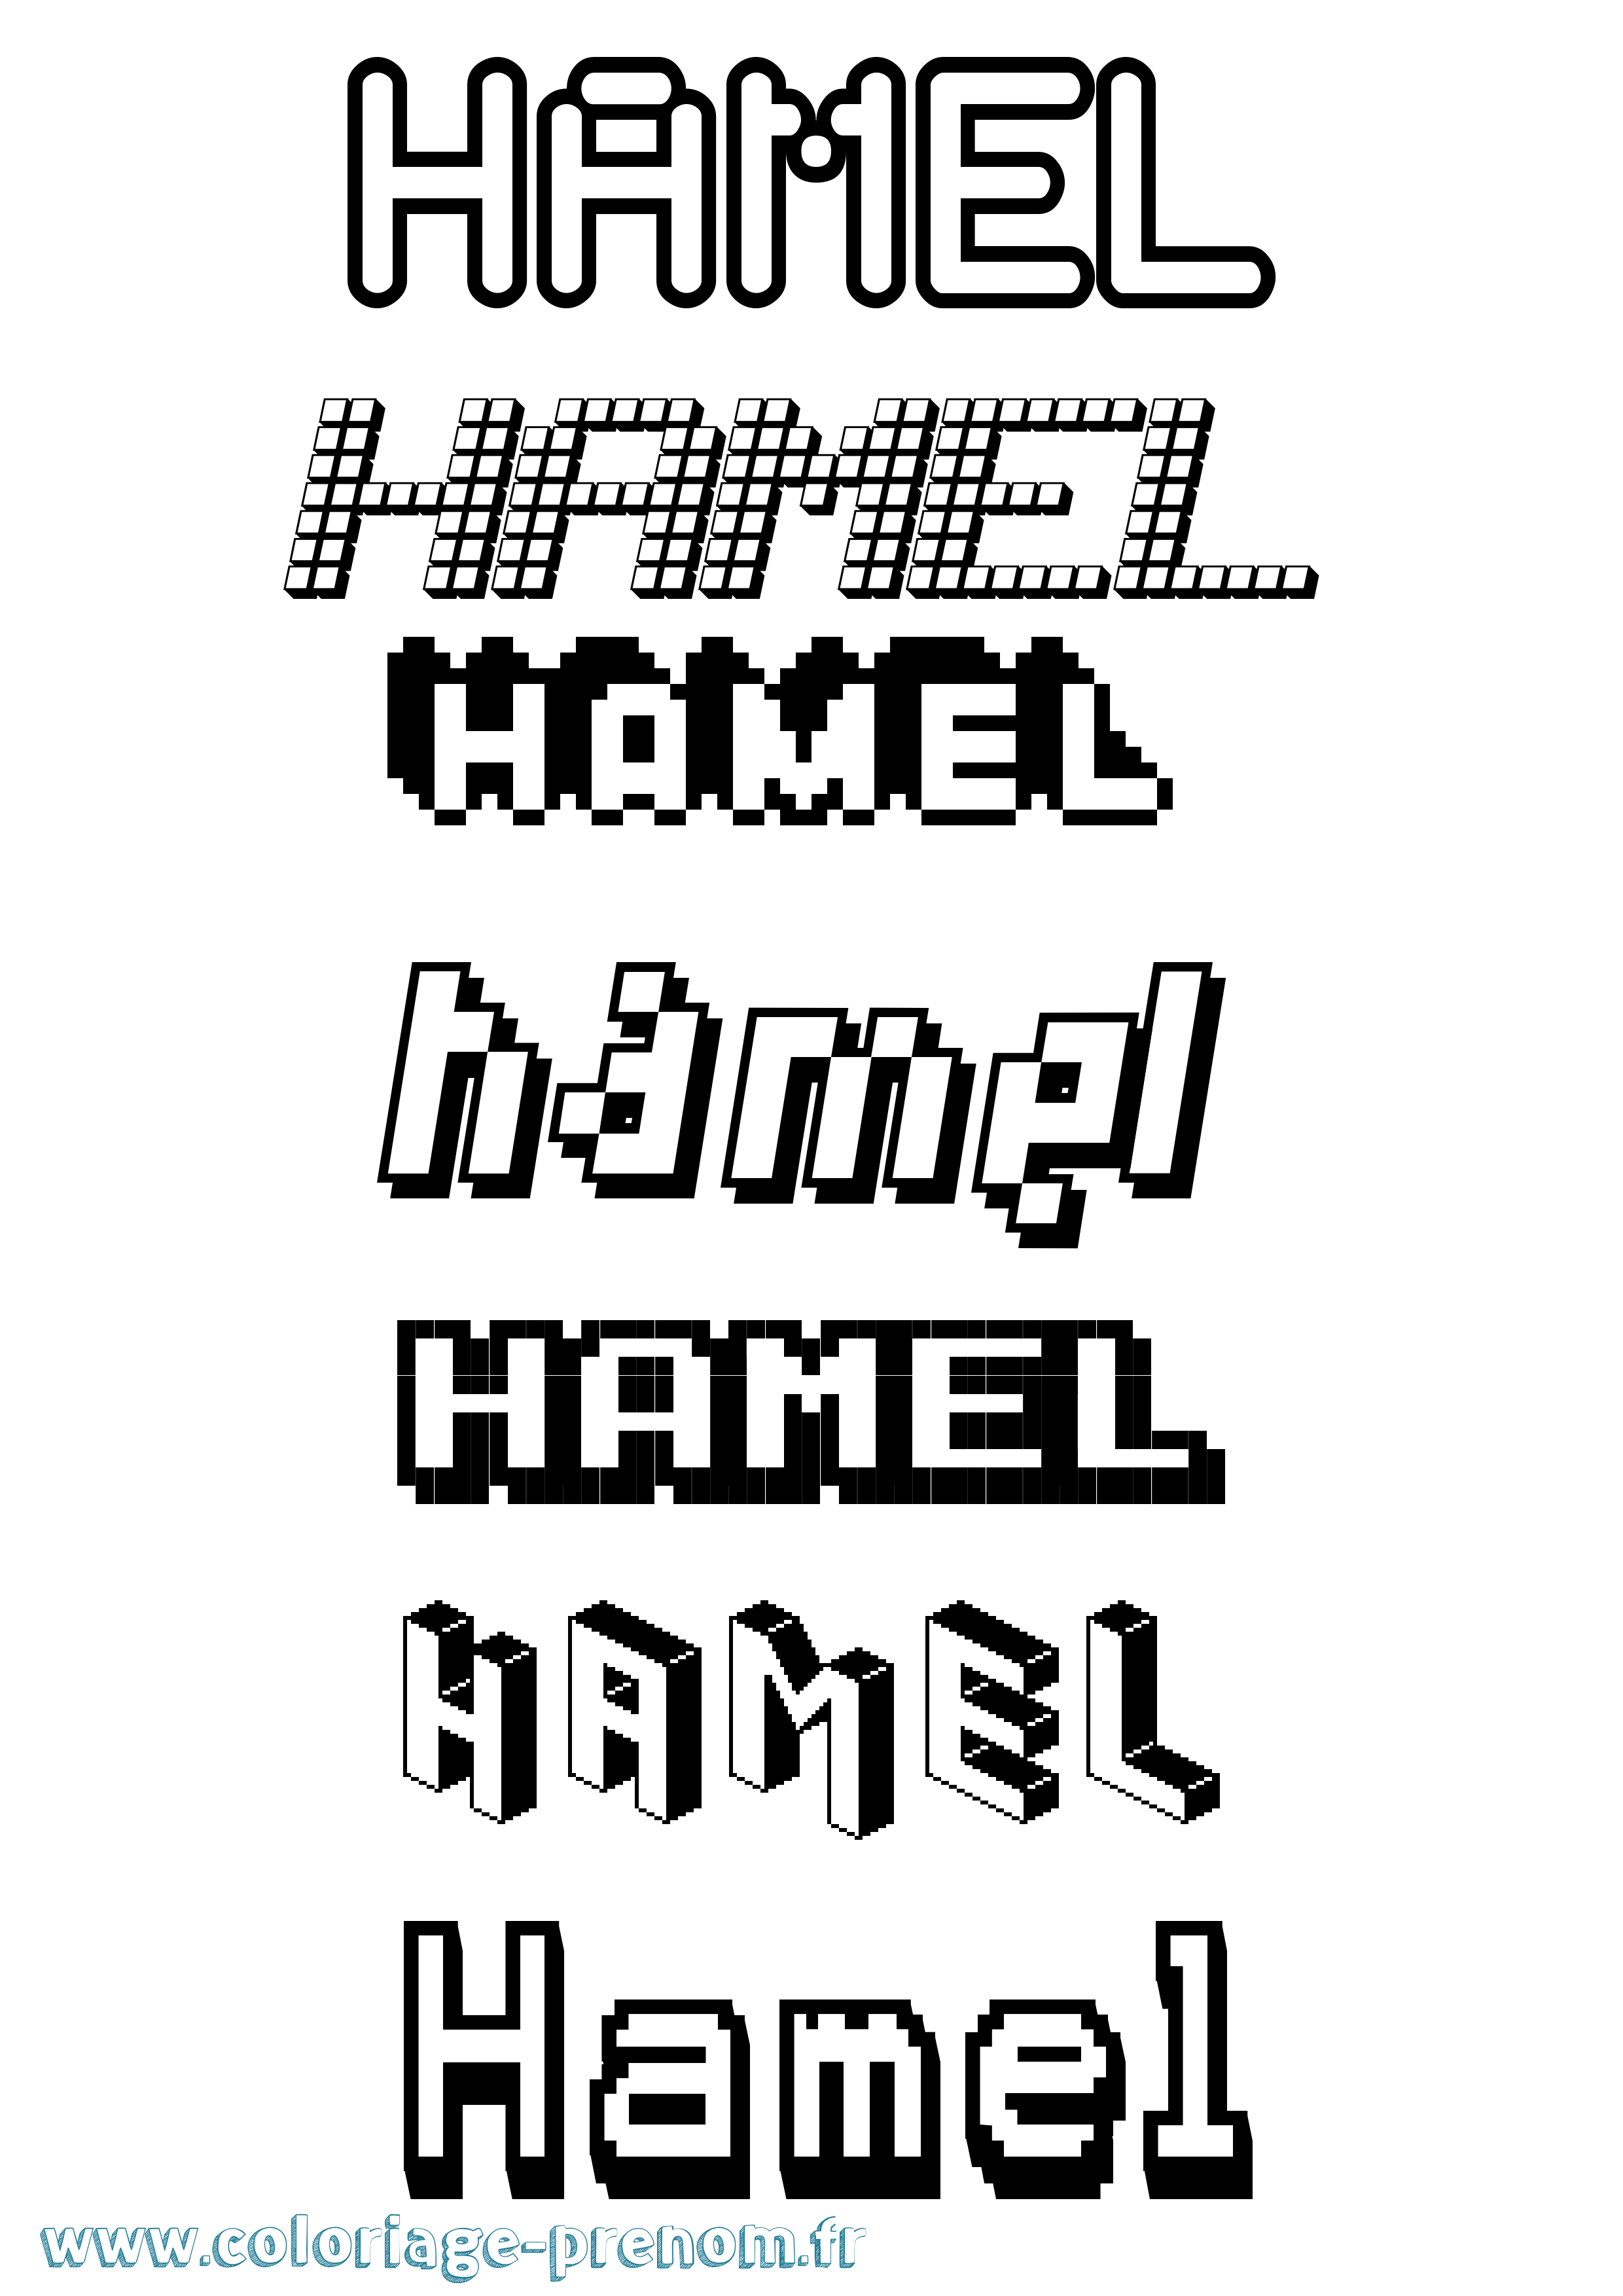 Coloriage prénom Hamel Pixel